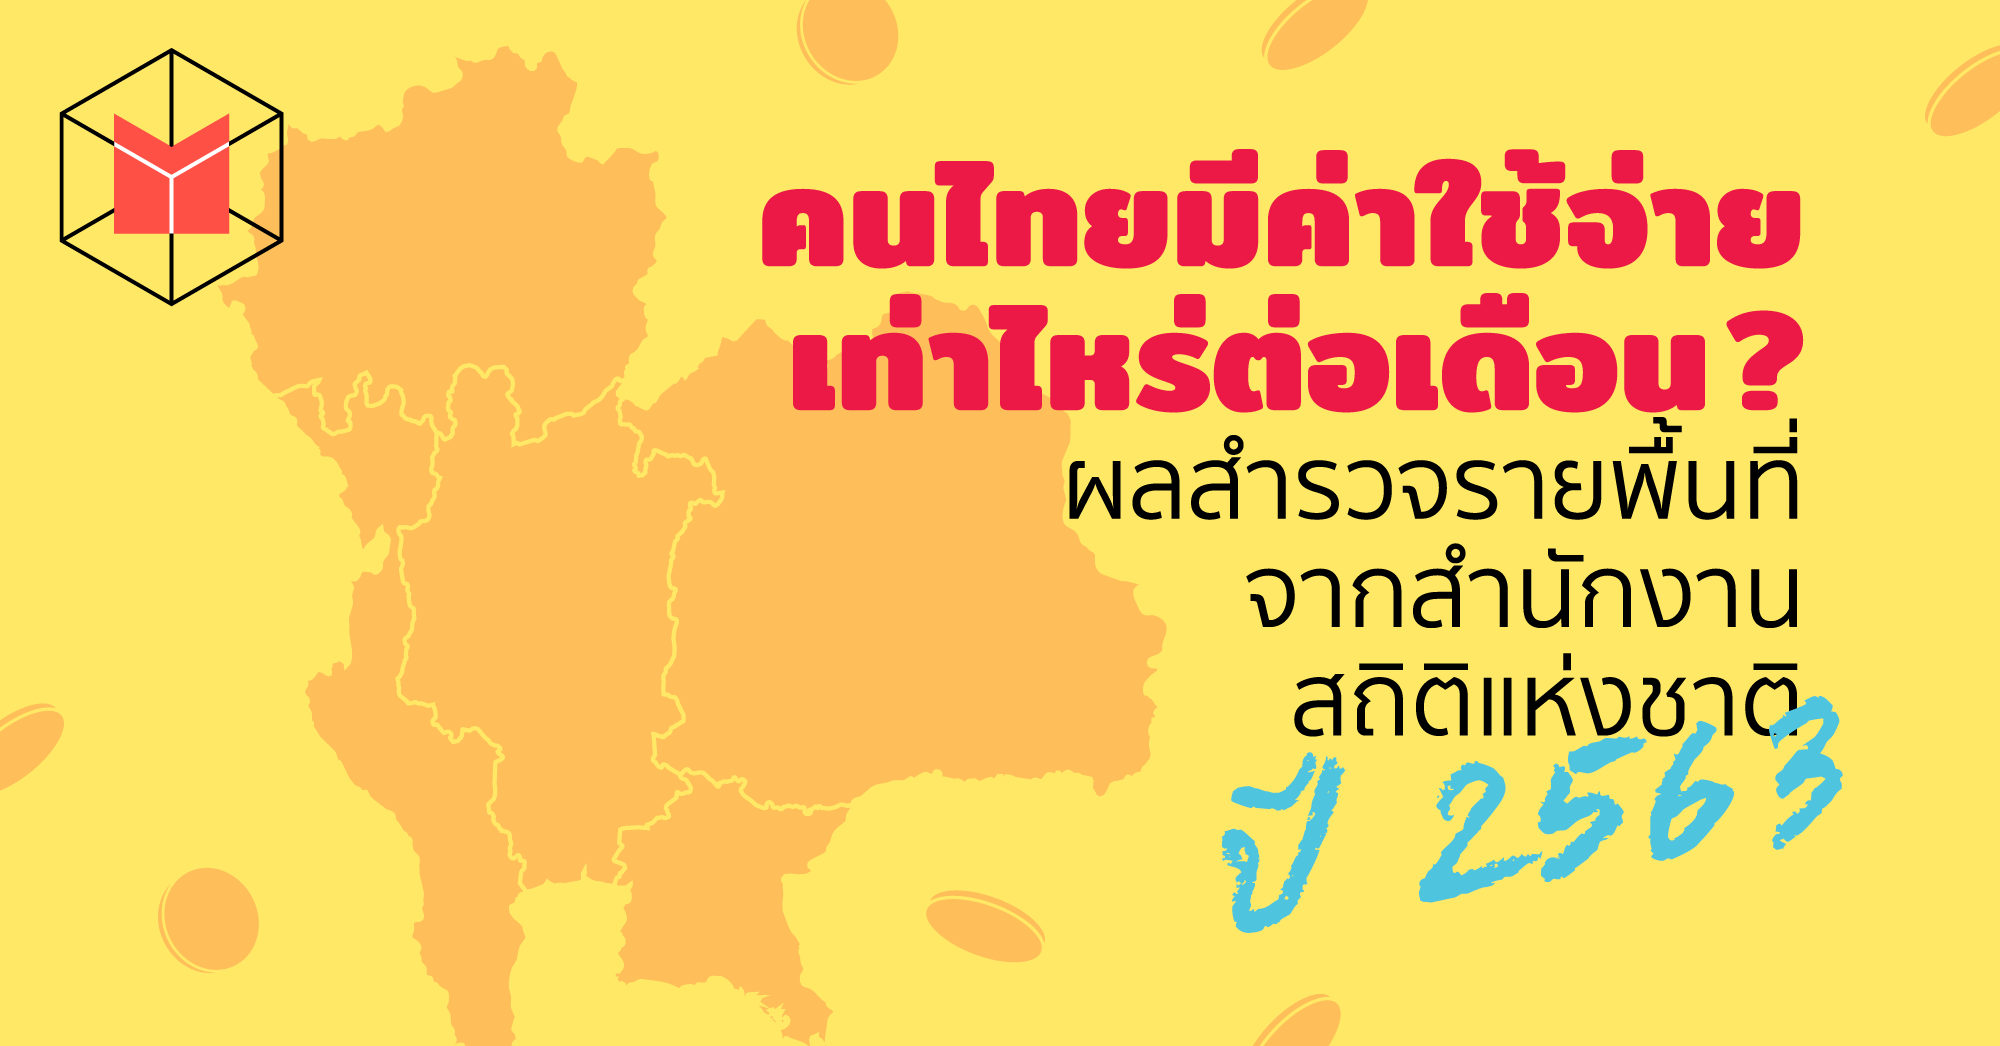 คนไทยมีค่าใช้จ่ายเท่าไหร่ต่อเดือน? ผลสำรวจรายพื้นที่จากสำนักงานสถิติแห่งชาติ  ปี 2563